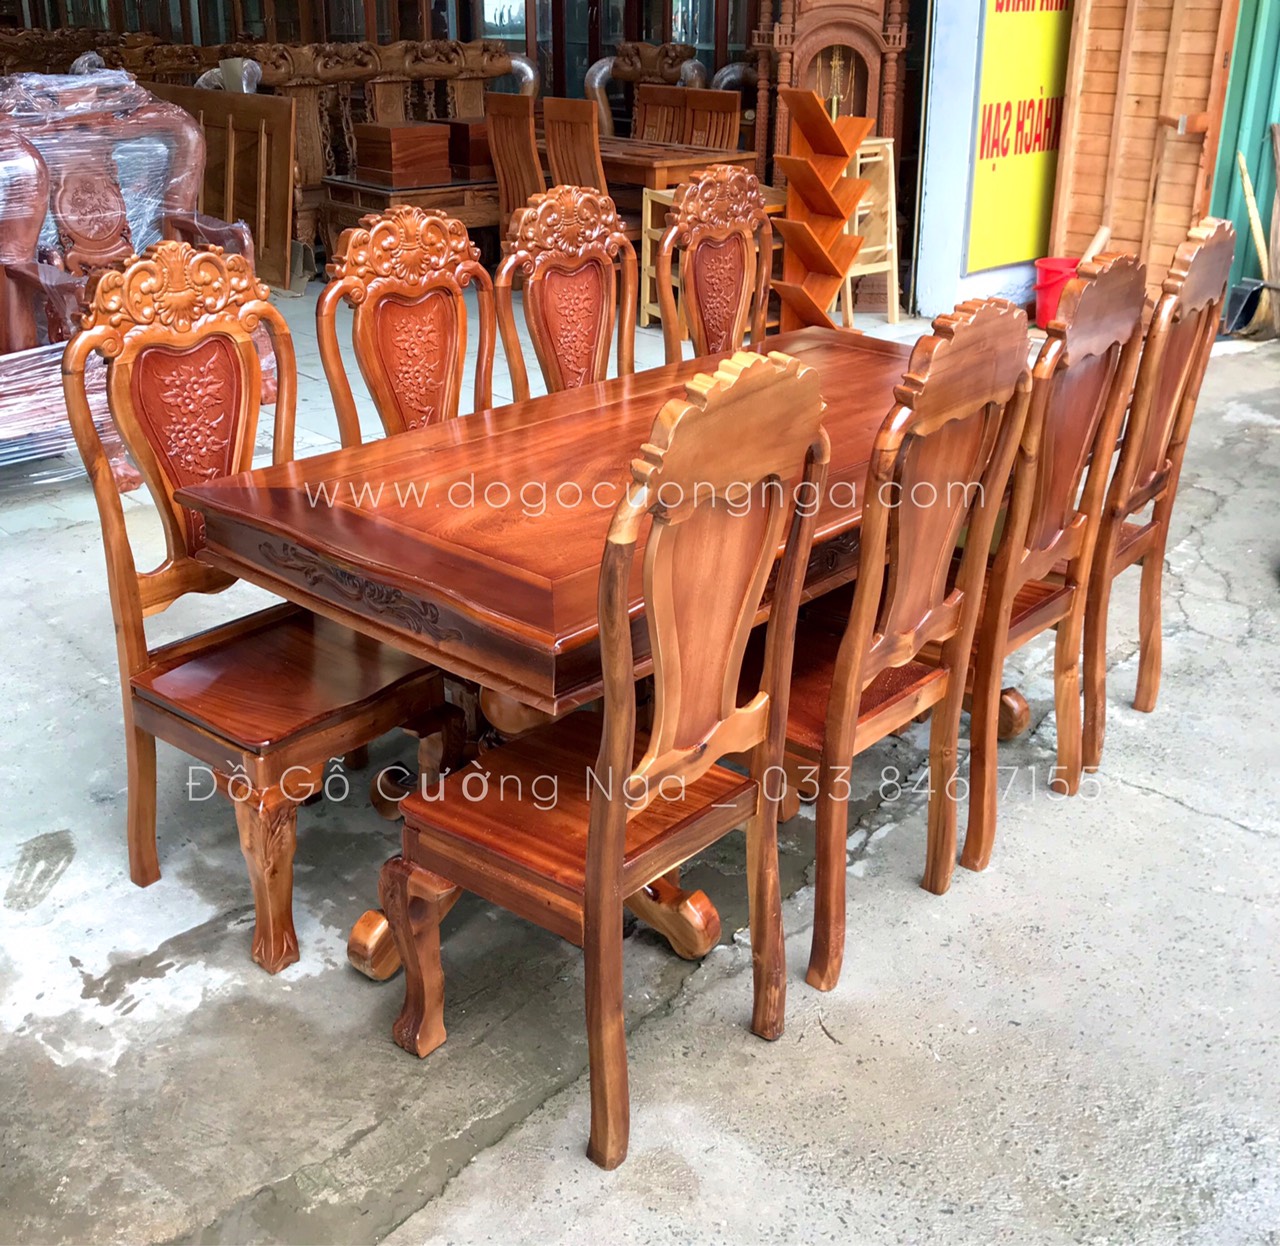 Với chất liệu gỗ tràm bông và kĩ thuật chế tác tinh xảo, bộ bàn ăn 8 ghế gỗ tràm bông vàng sẽ làm cho không gian ăn uống của bạn trở nên sang trọng và ấn tượng hơn mọi lúc.